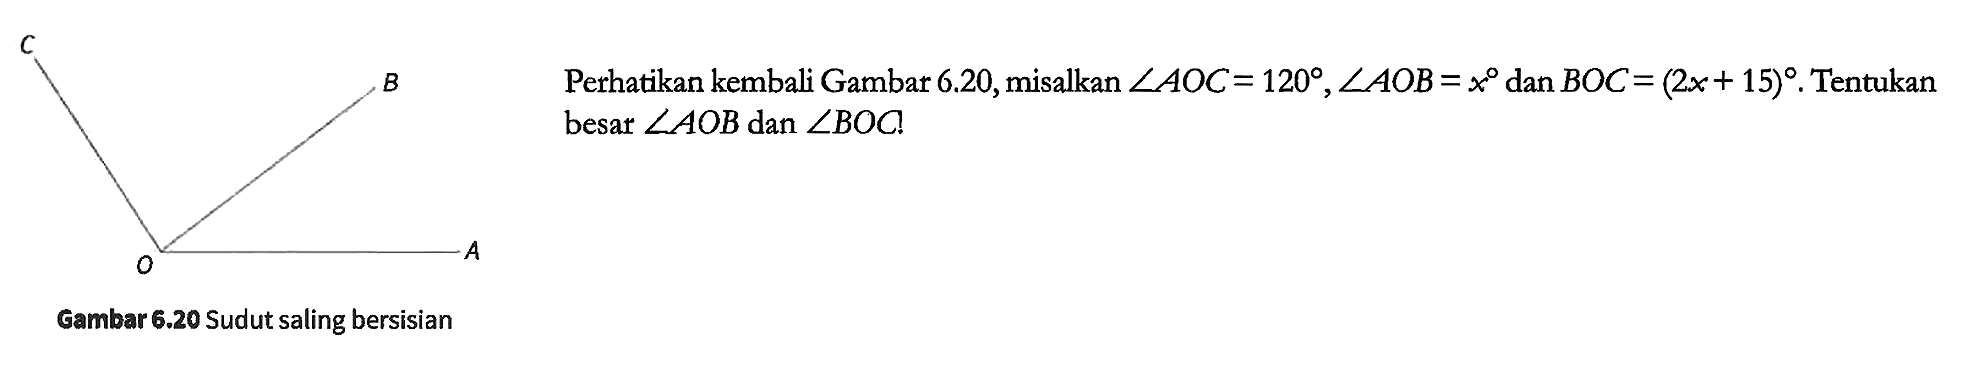 Perhatikan kembali Gambar 6.20, misalkan sudut AOC = 120, sudut AOB = x dan BOC = (2x + 15). Tentukan besar sudut AOB dan sudut BOC.
C B A O
Gambar 6.20 Sudut saling bersisian